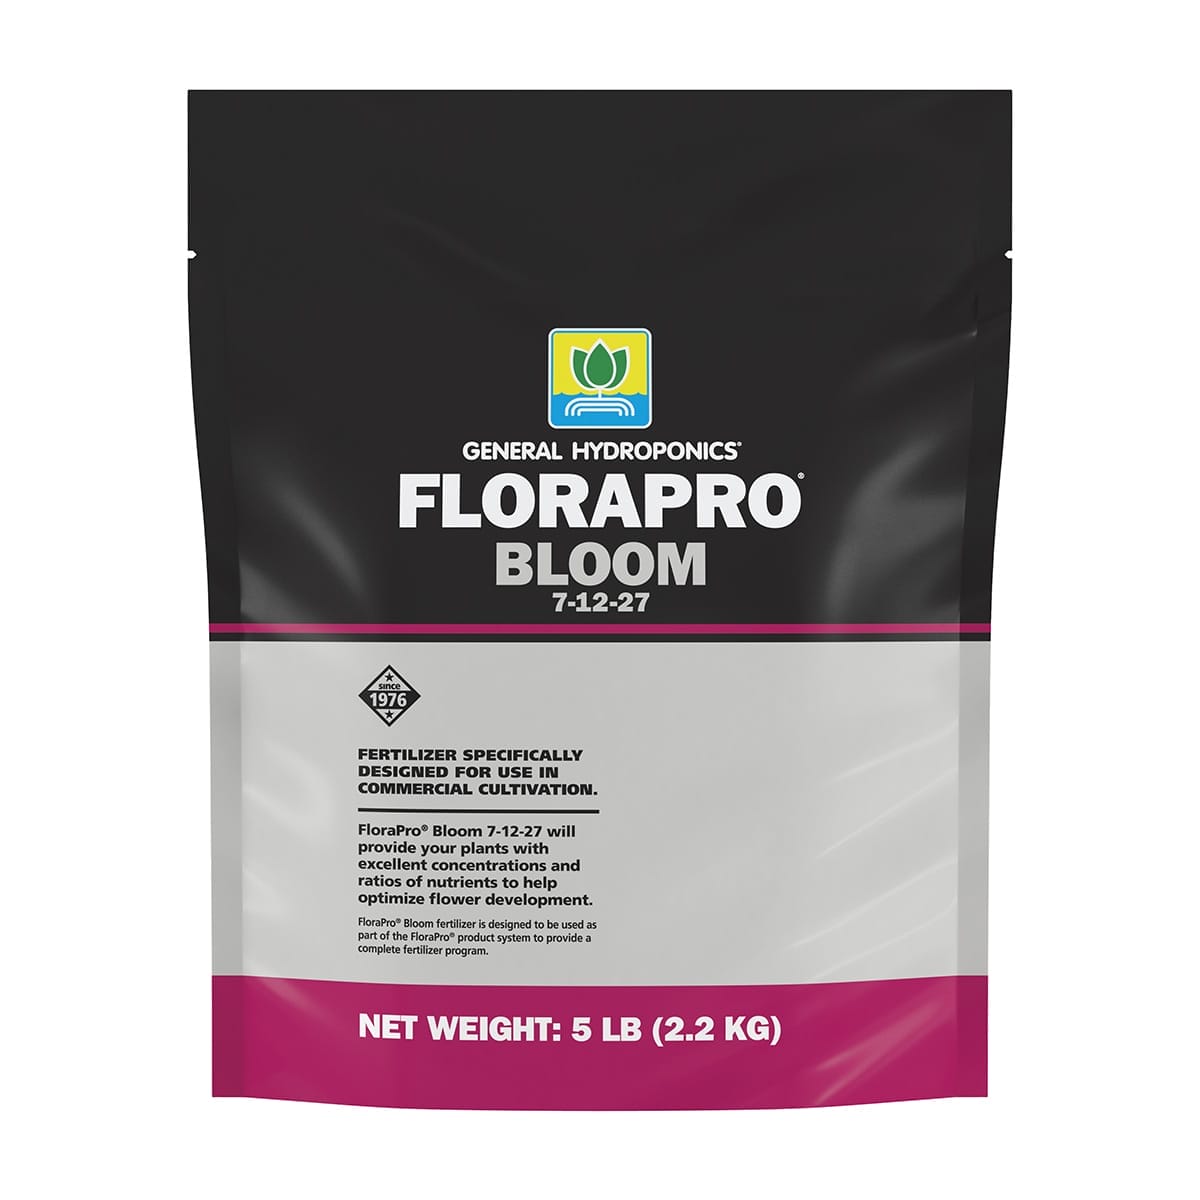 General Hydroponics FloraPro Bloom 5lb